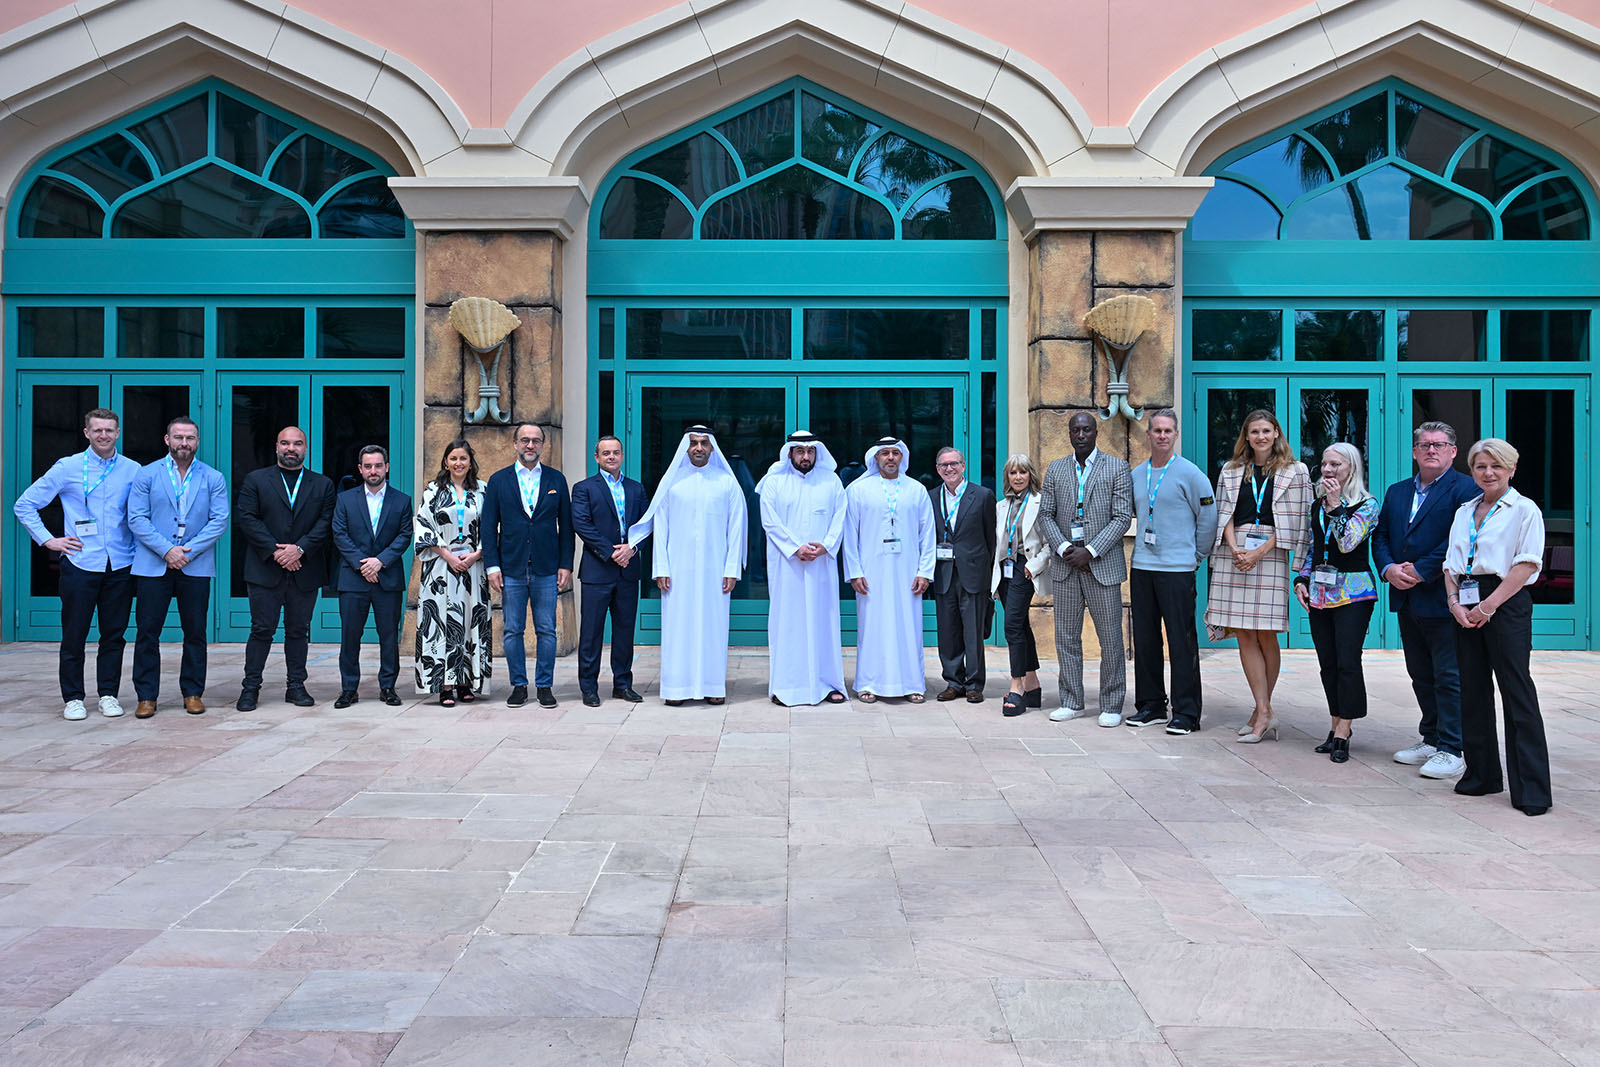 تُعقد تحت رعاية محمد بن راشد أحمد بن محمد يلتقي قادة ومسؤولي العلامات التجارية العالمية على هامش انطلاق الدورة الرابعة من قمة التجزئة في دبي